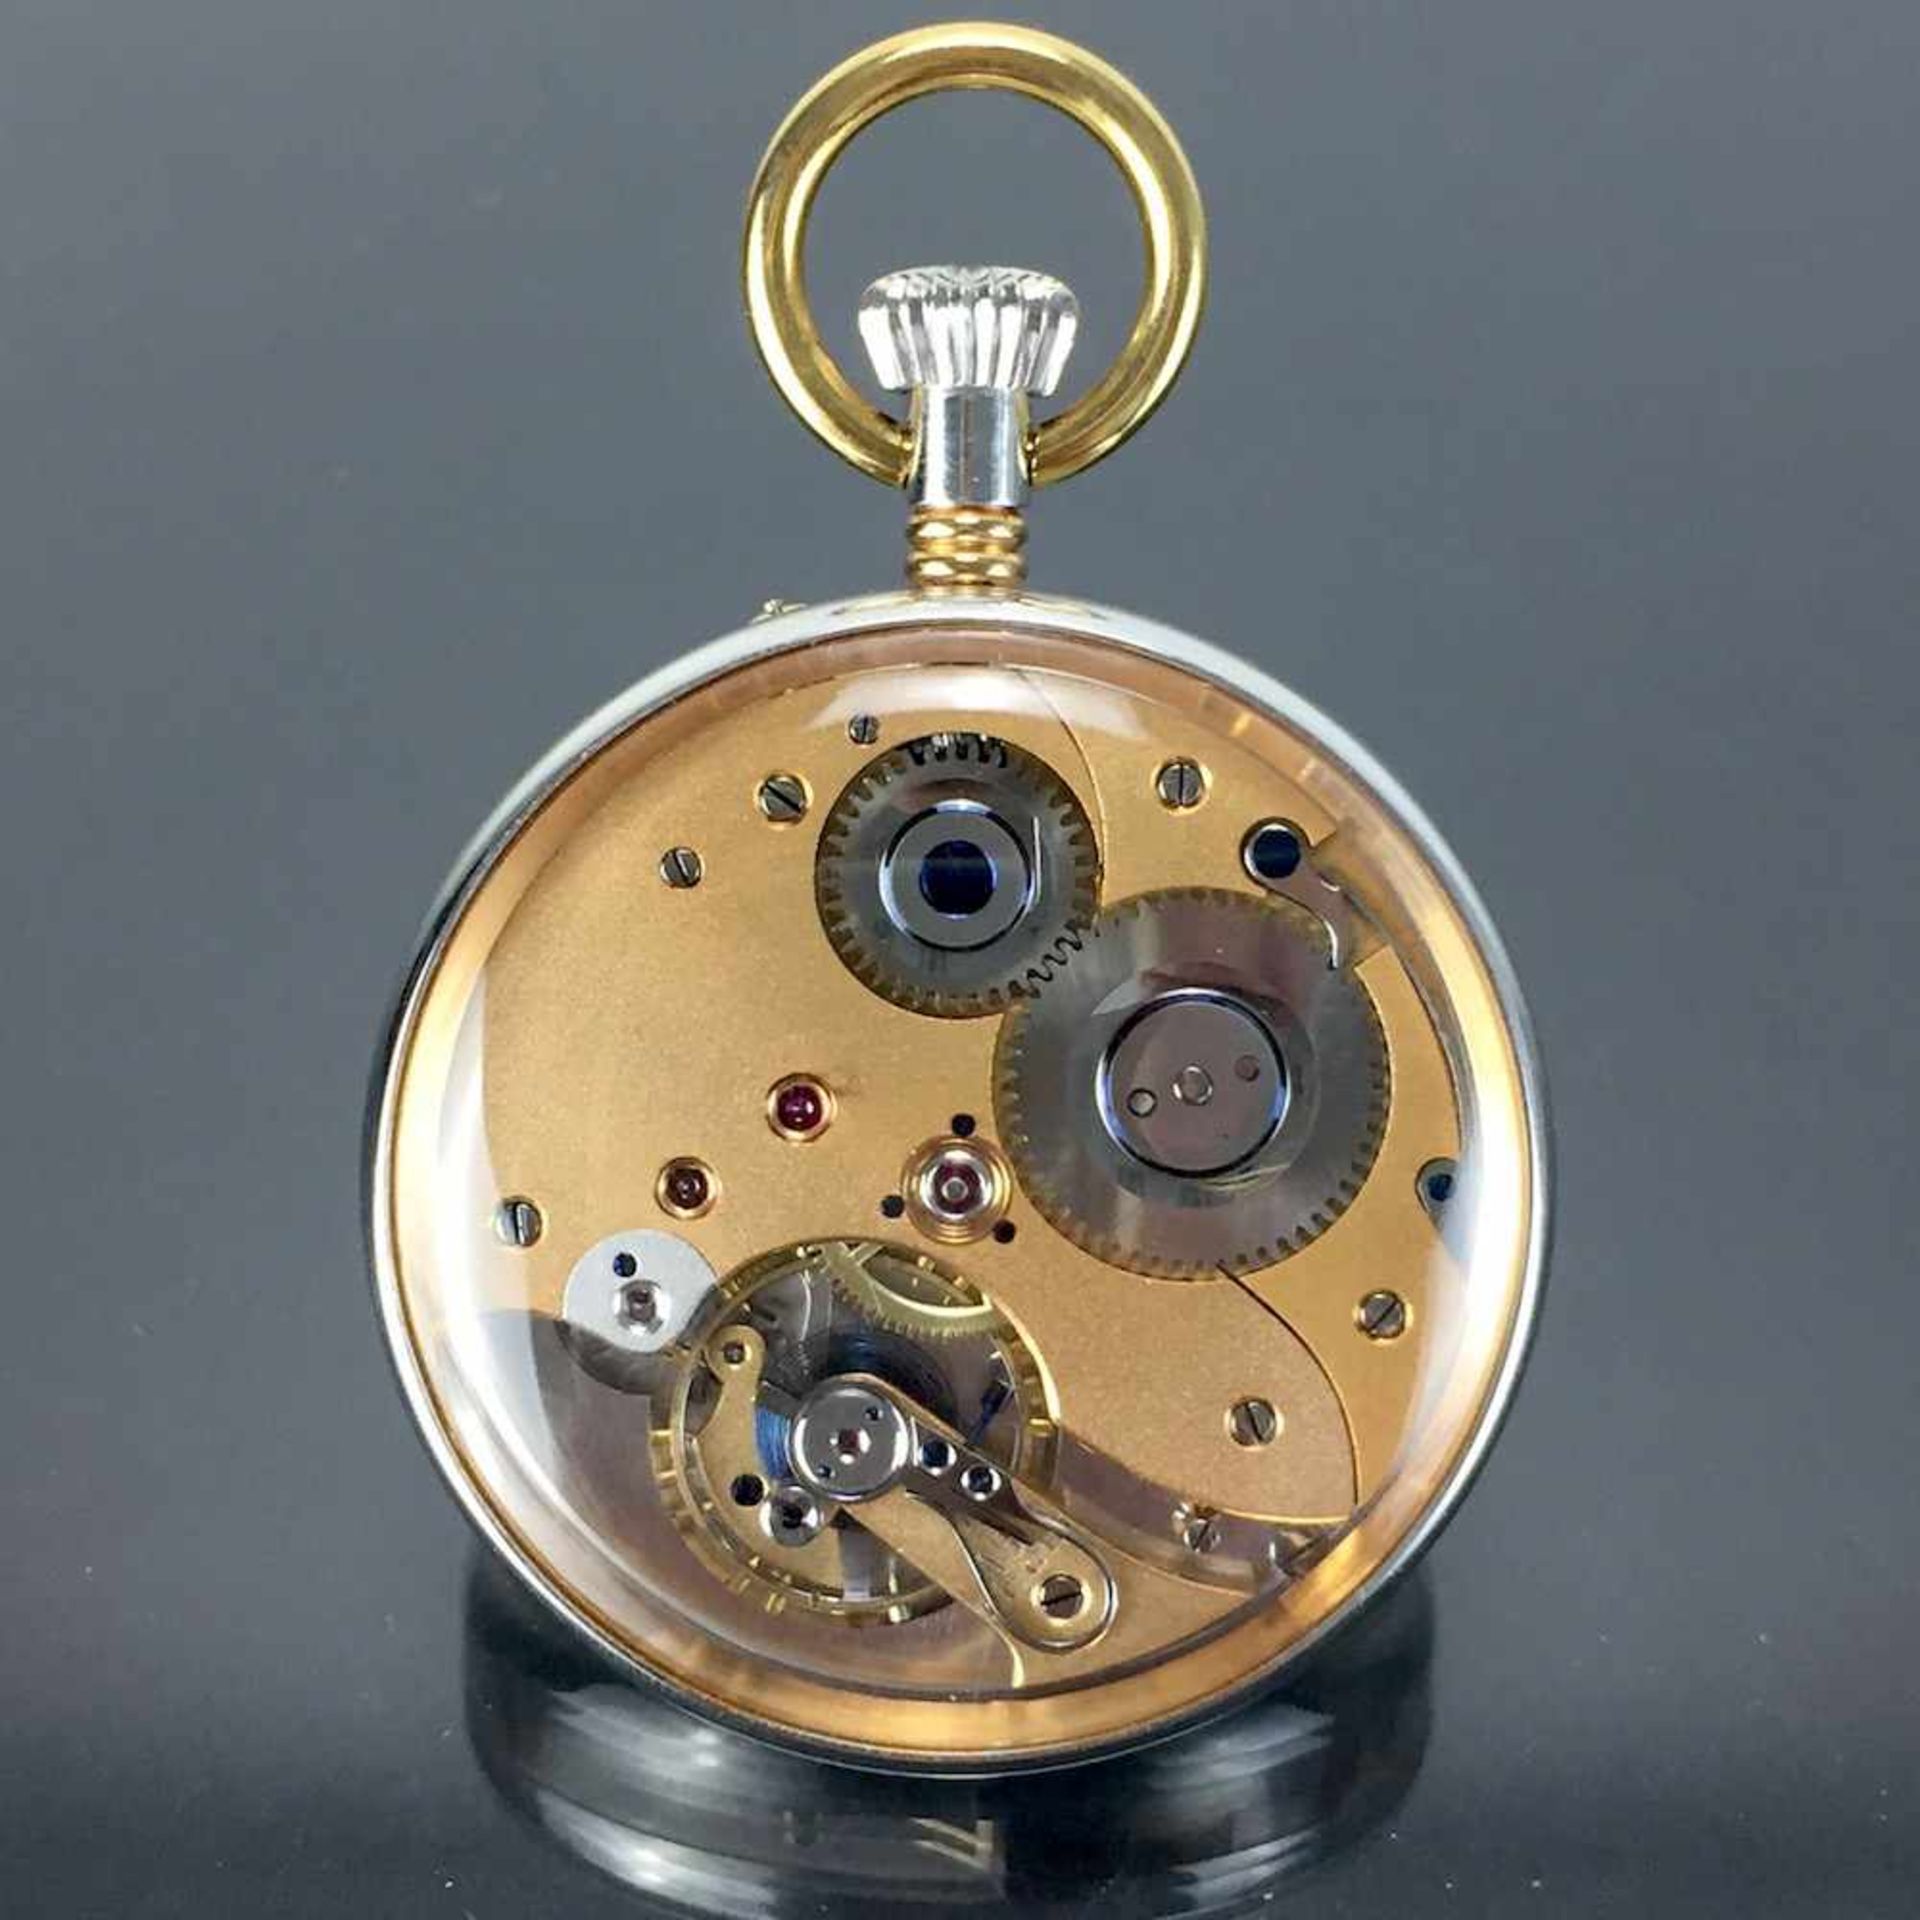 Herrentaschenuhr in GlasgehäuseHerren-Taschenuhr: Hochwertiges Werk mit vergoldeter - Bild 3 aus 6